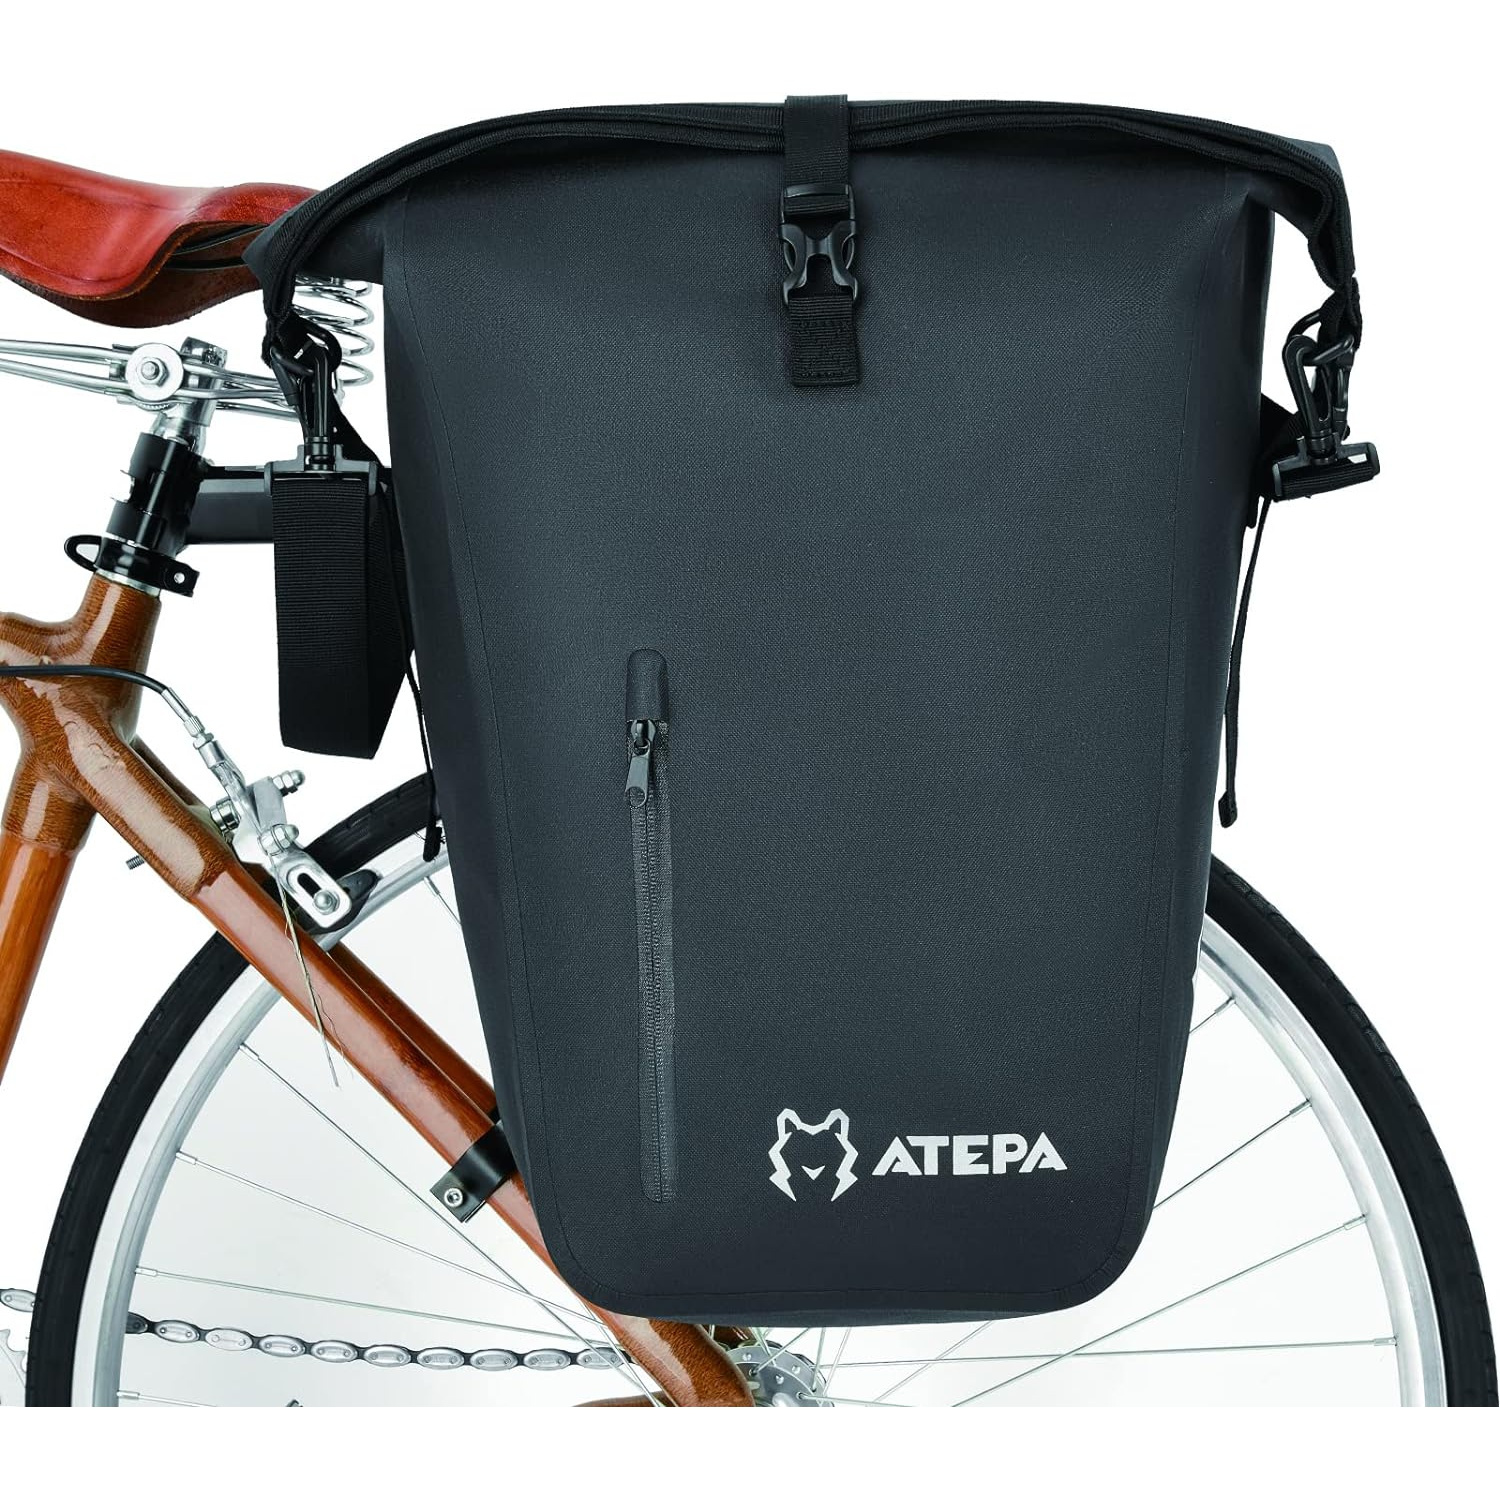 

Atepa Bicycle Bag 27 Liters Waterproof Bicycle Basket Bag, Bicycle Seat Bag-rack Bag, Bicycle Cargo Shoulder Bag Rear Seat Storage, Suitable For Commuting Travel Bike